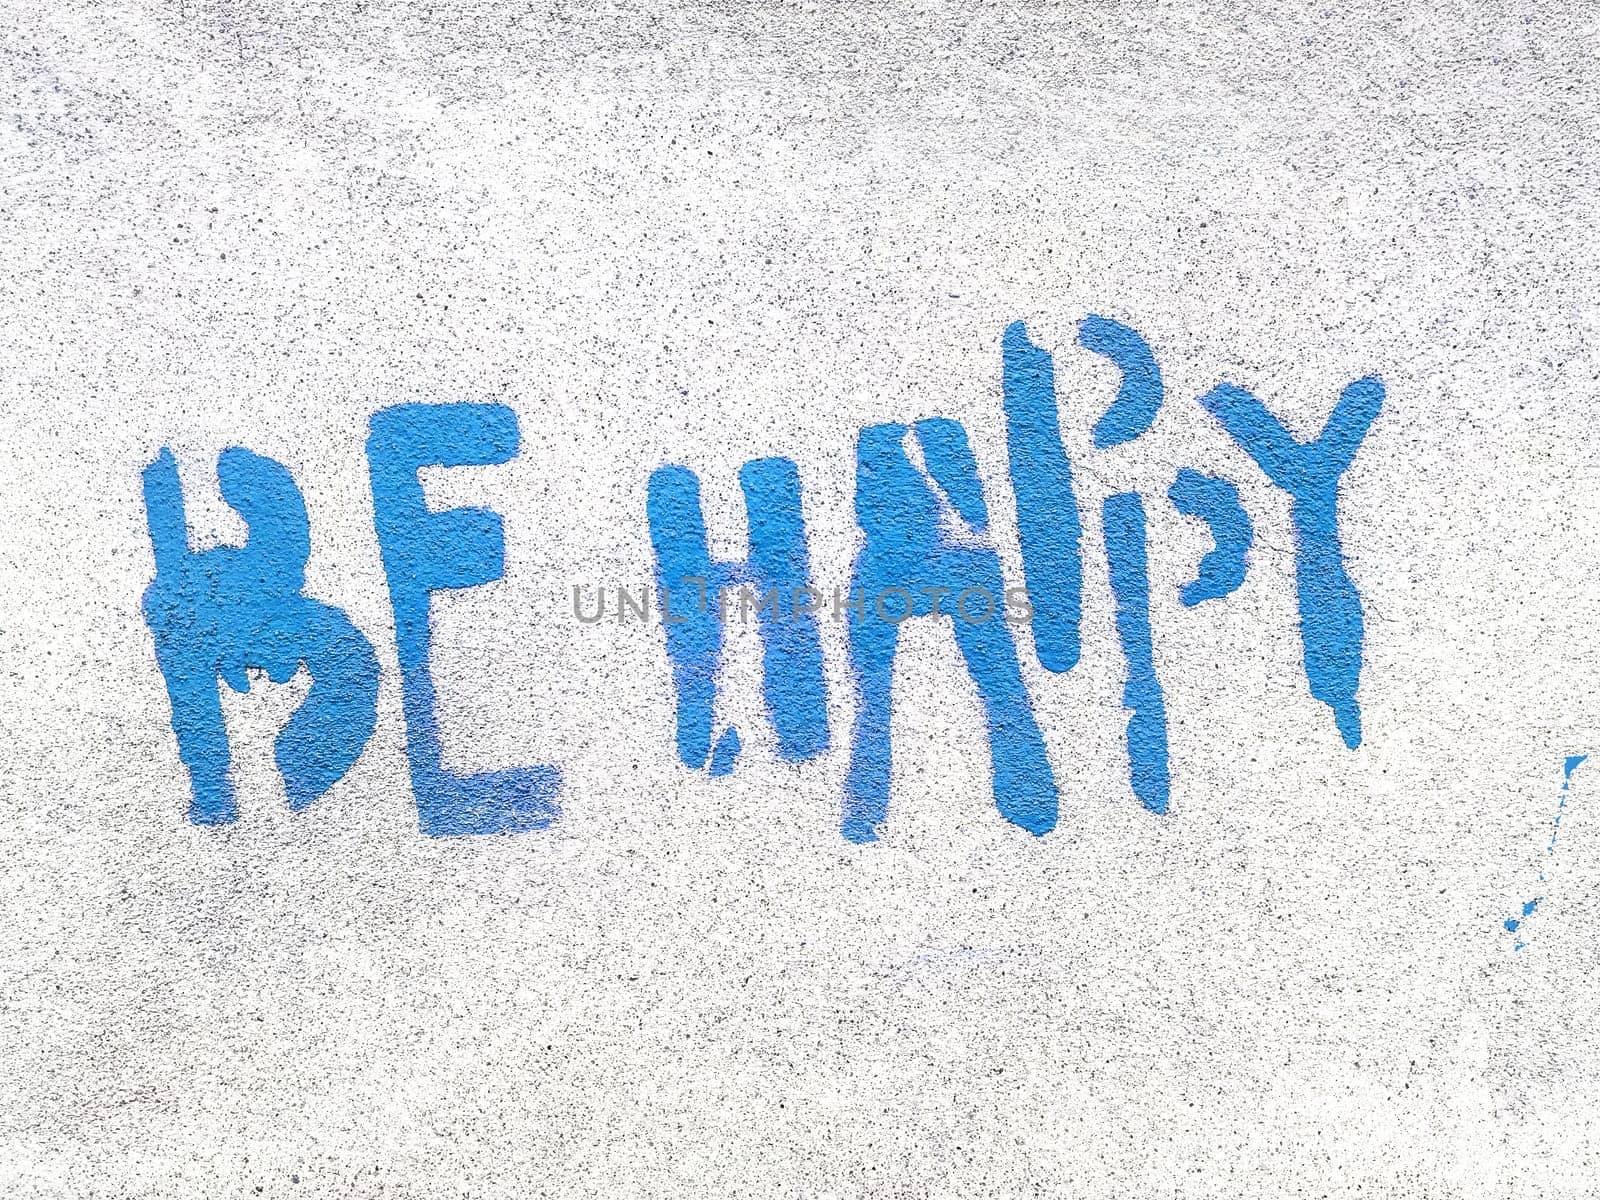 Blue Be Happy written in graffiti style by germanopoli